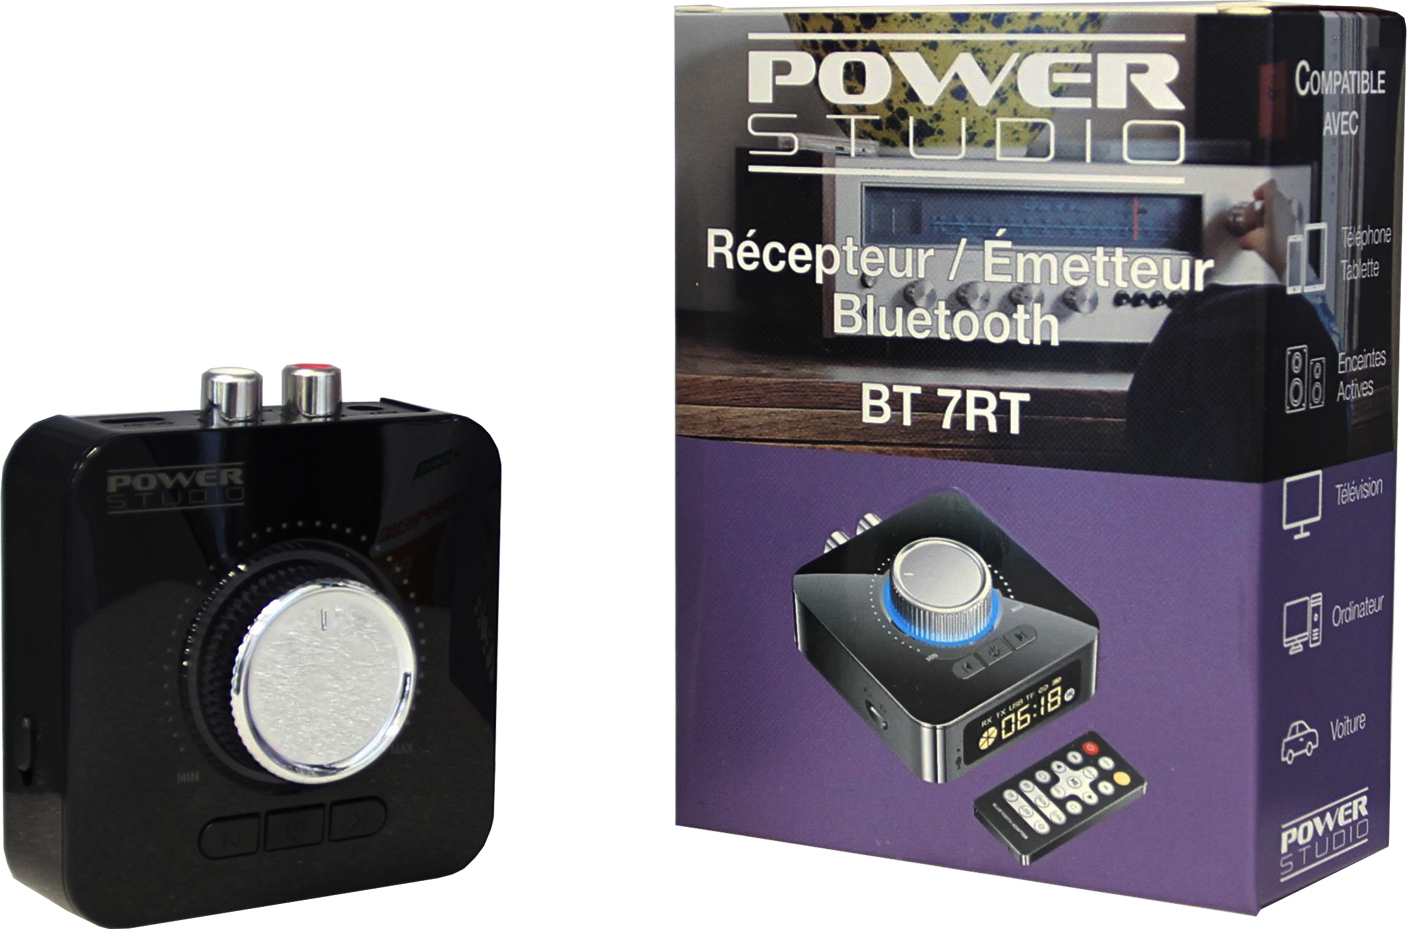 Power Studio Bt 7rt - SystÊme Transmission Sans Fil Sono - Main picture